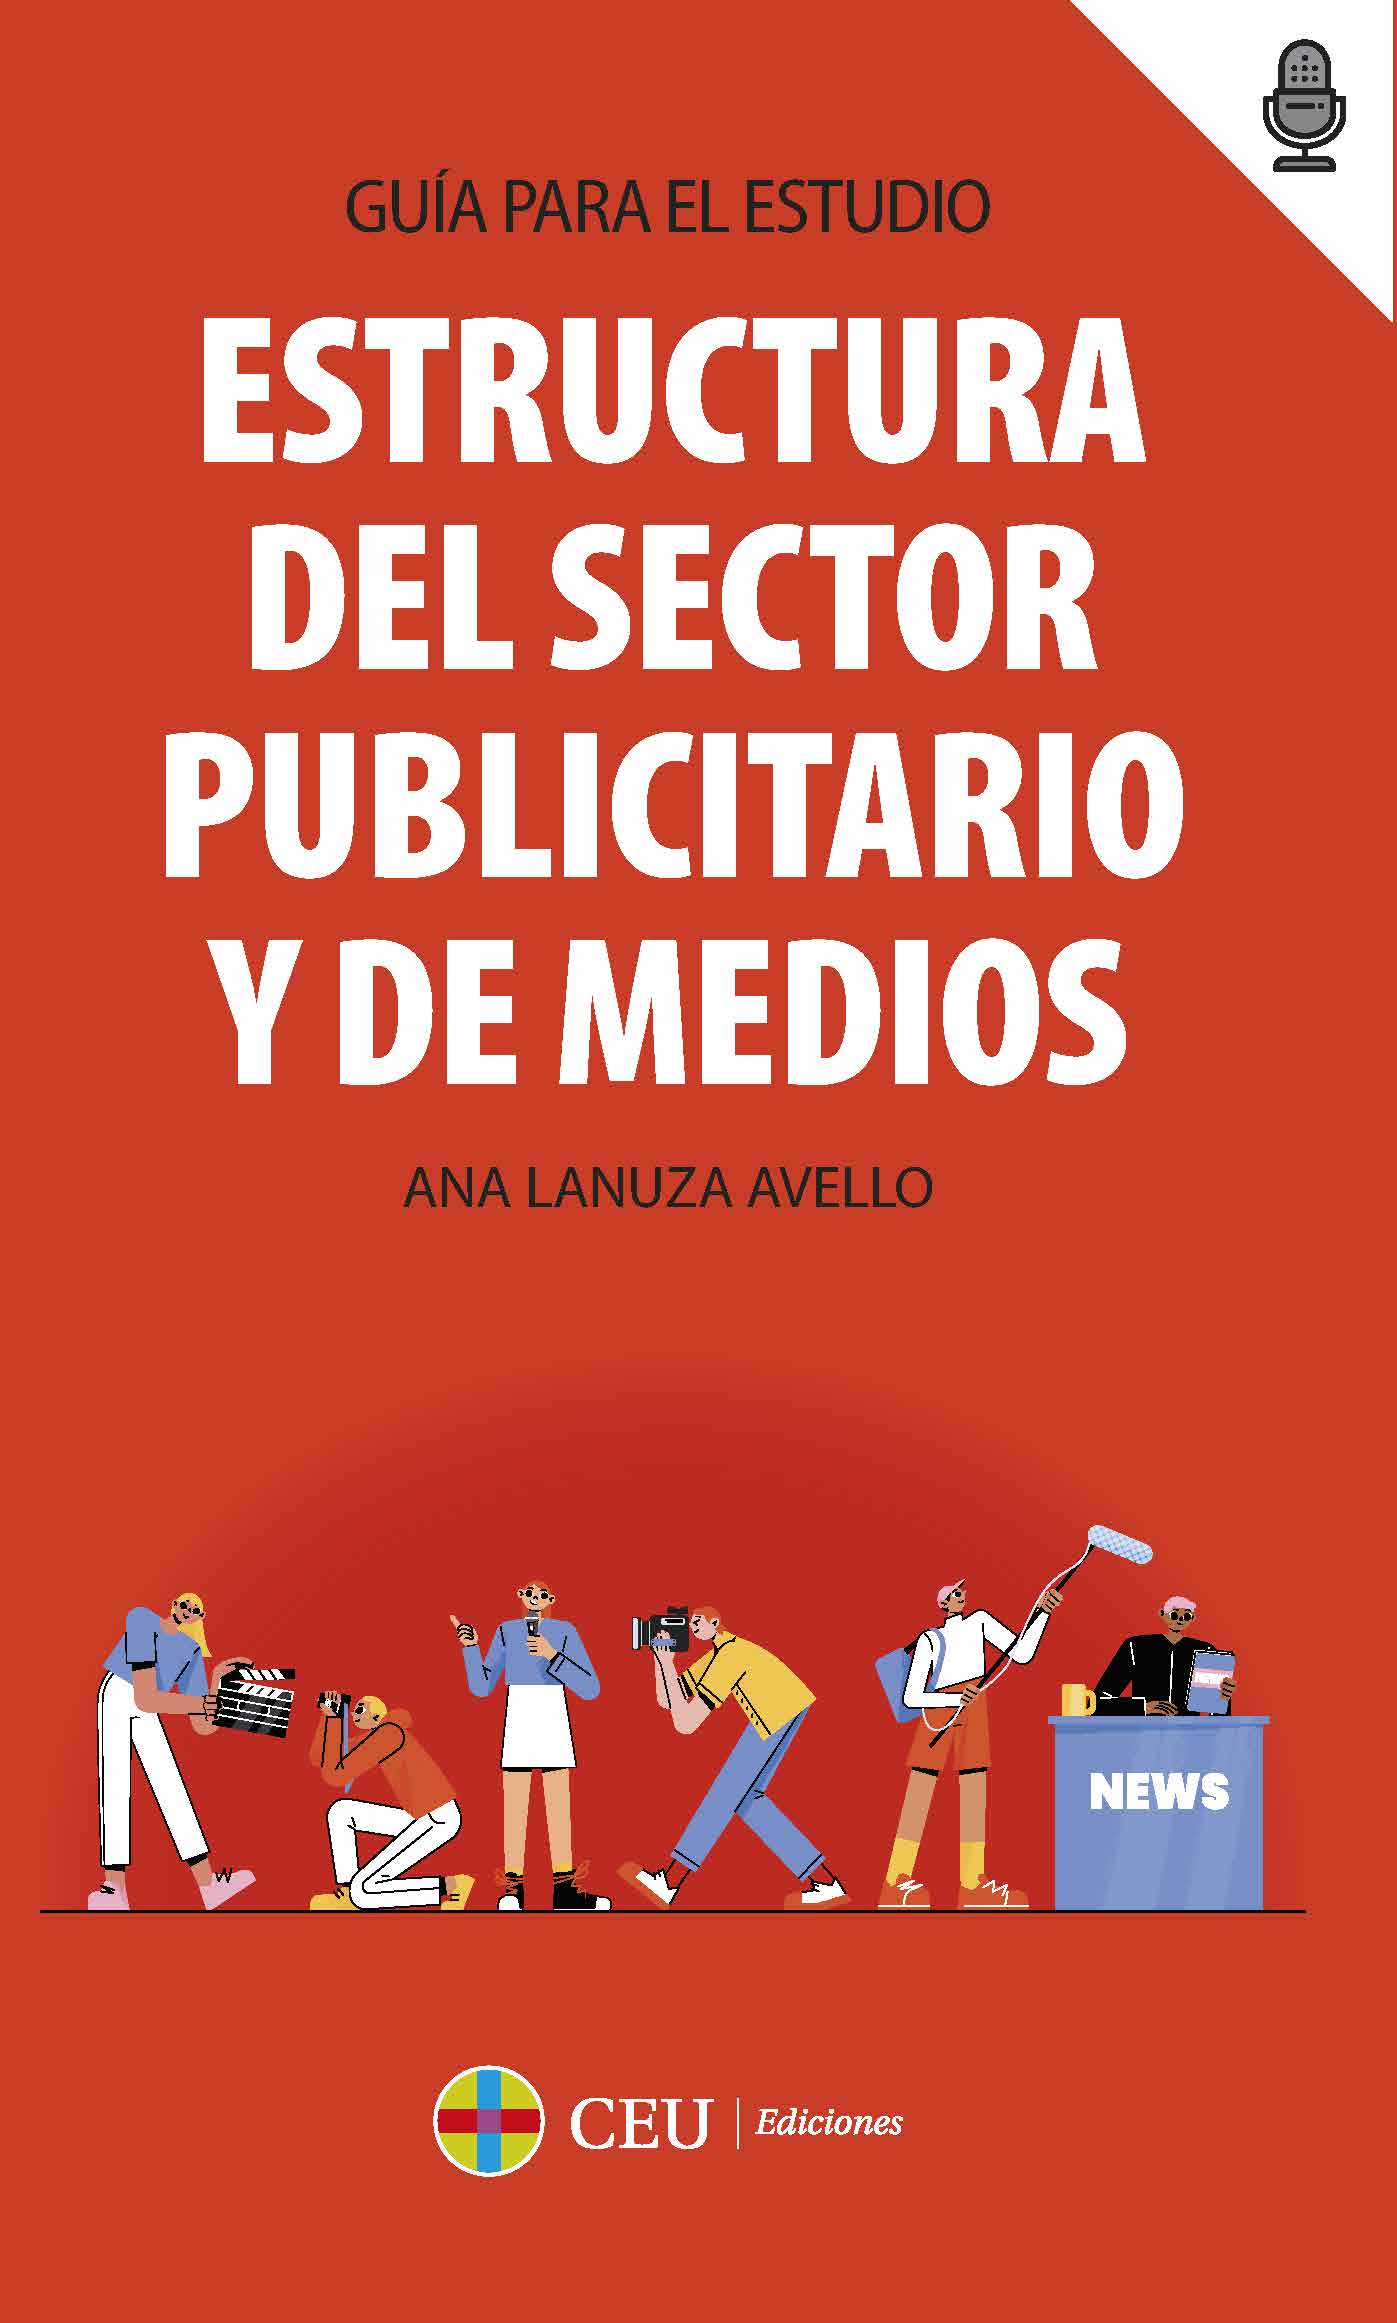 Estructura del sector publicitario y de medios